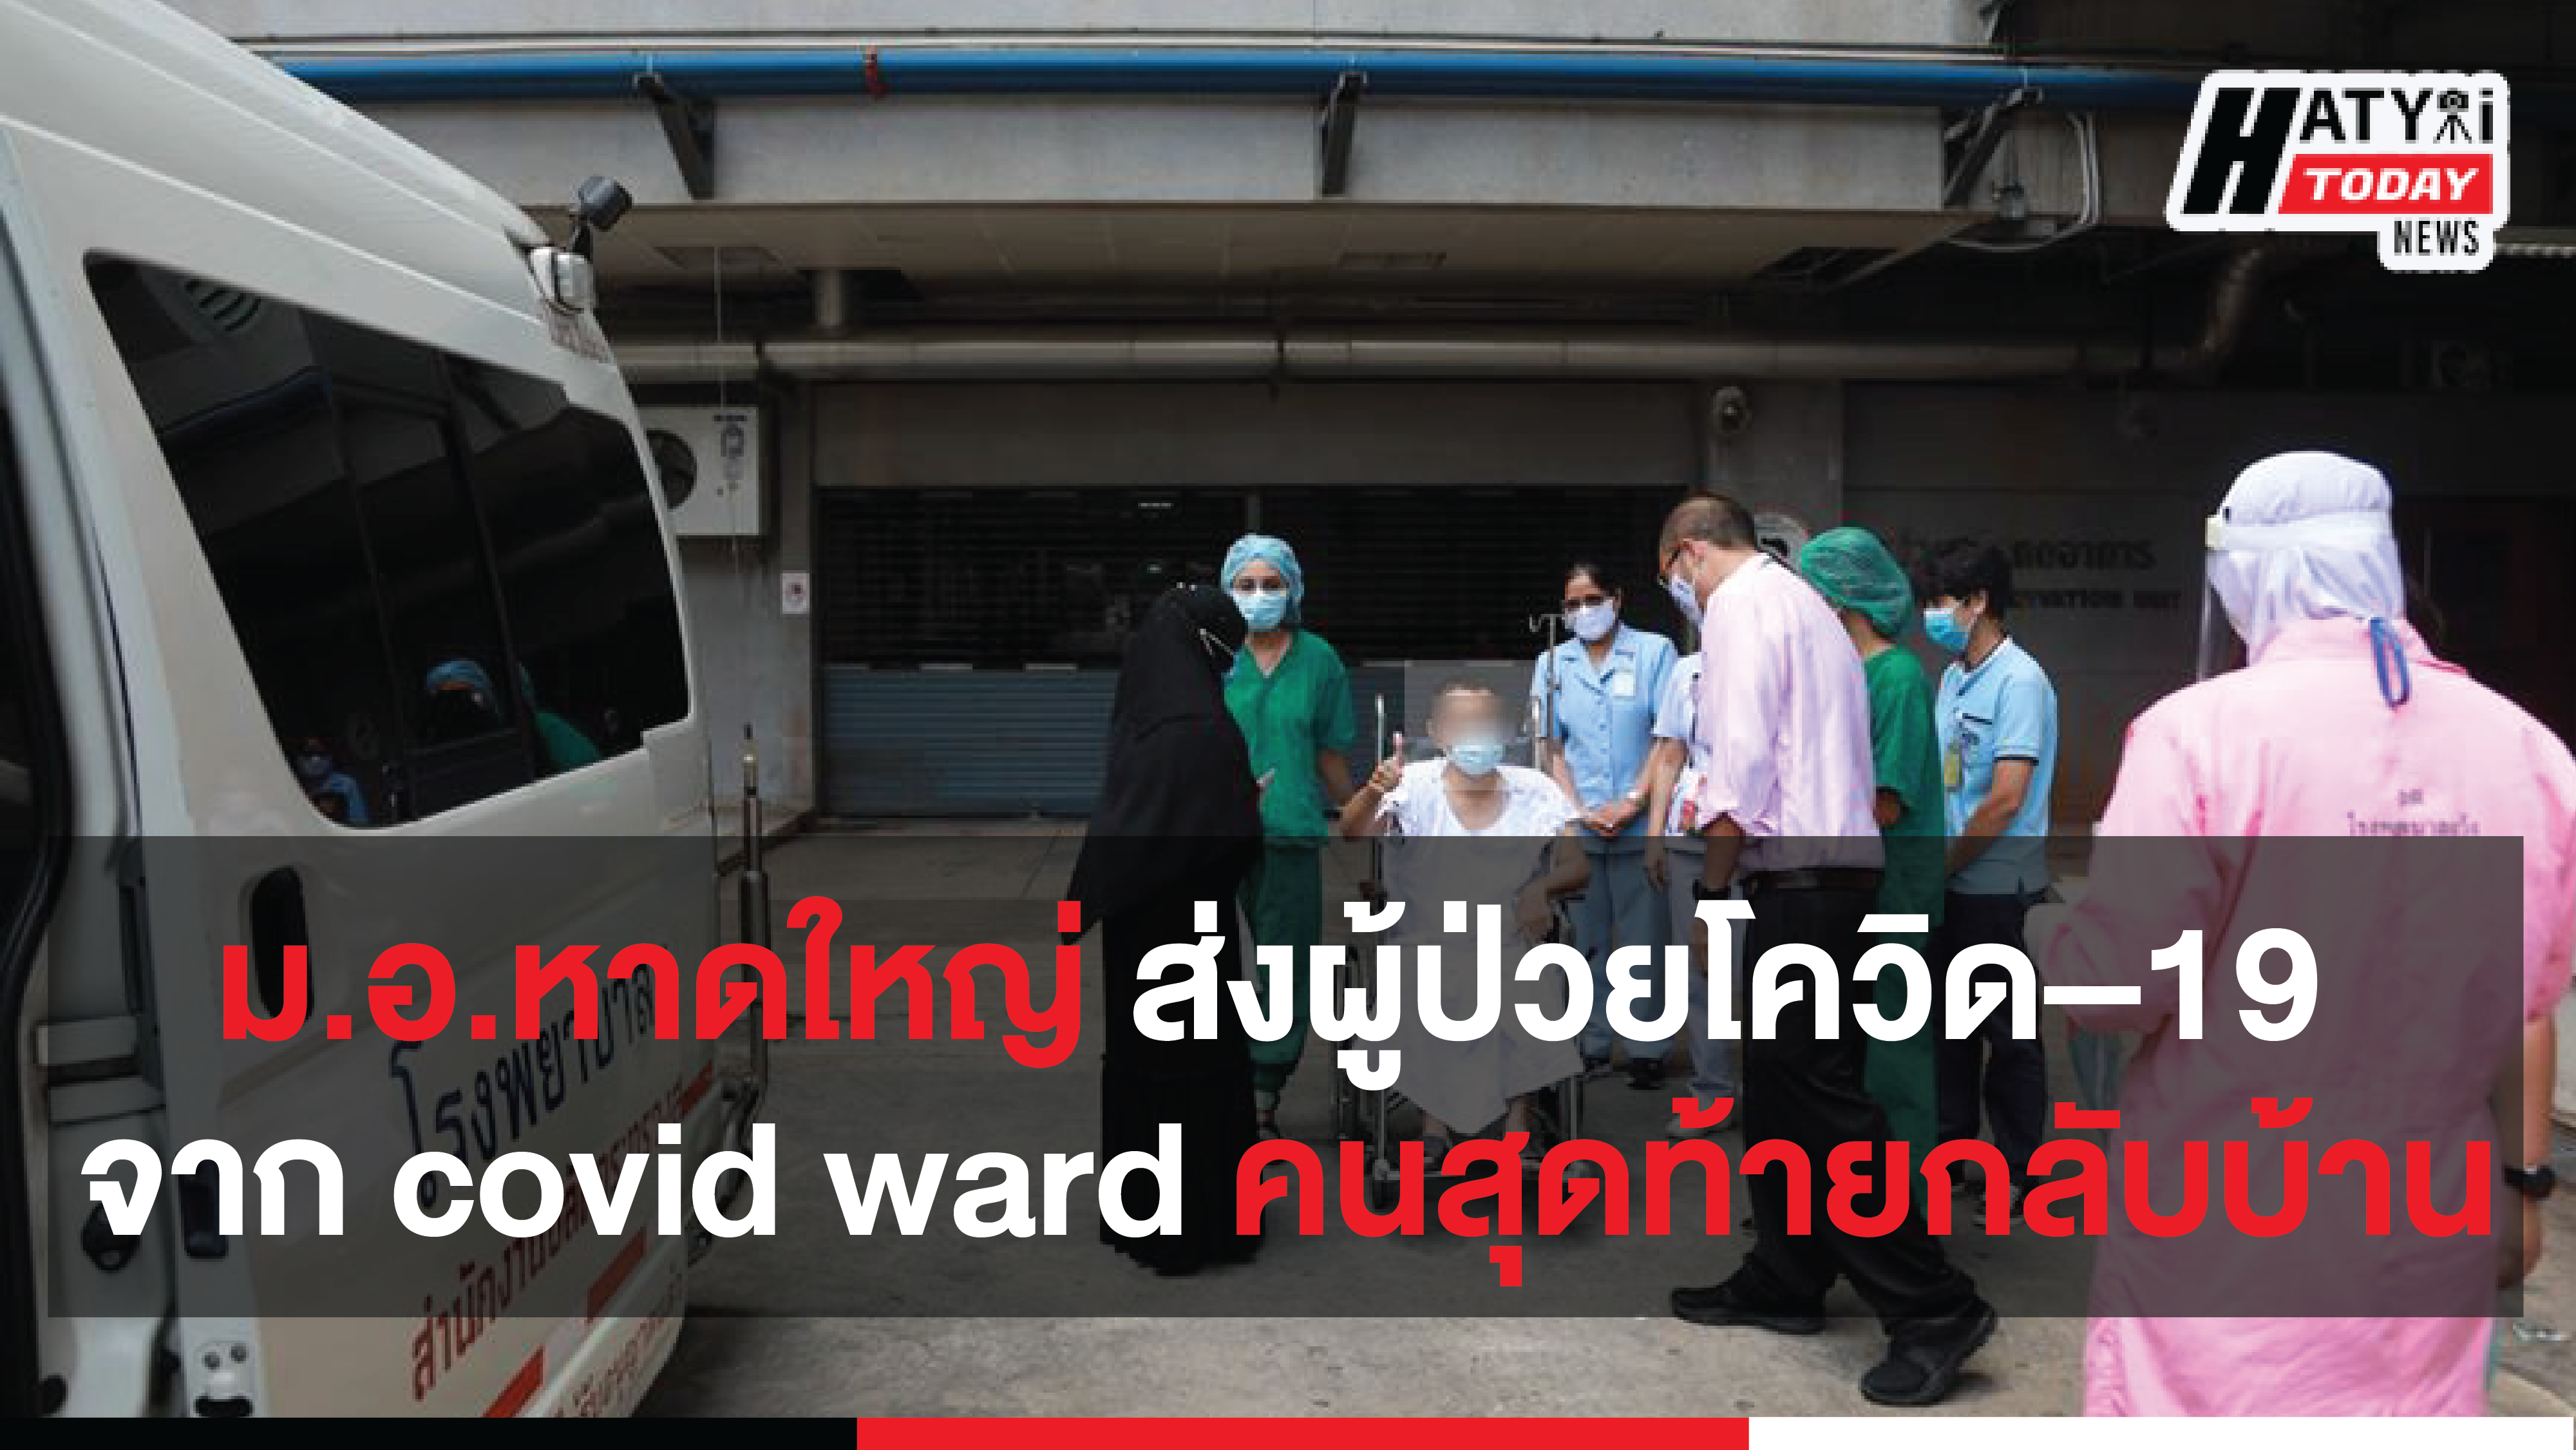 โรงพยาบาลสงขลานครินทร์ ได้ทำการส่งผู้ป่วยโรคโควิด–19 จาก covid ward คนสุดท้ายกลับบ้าน